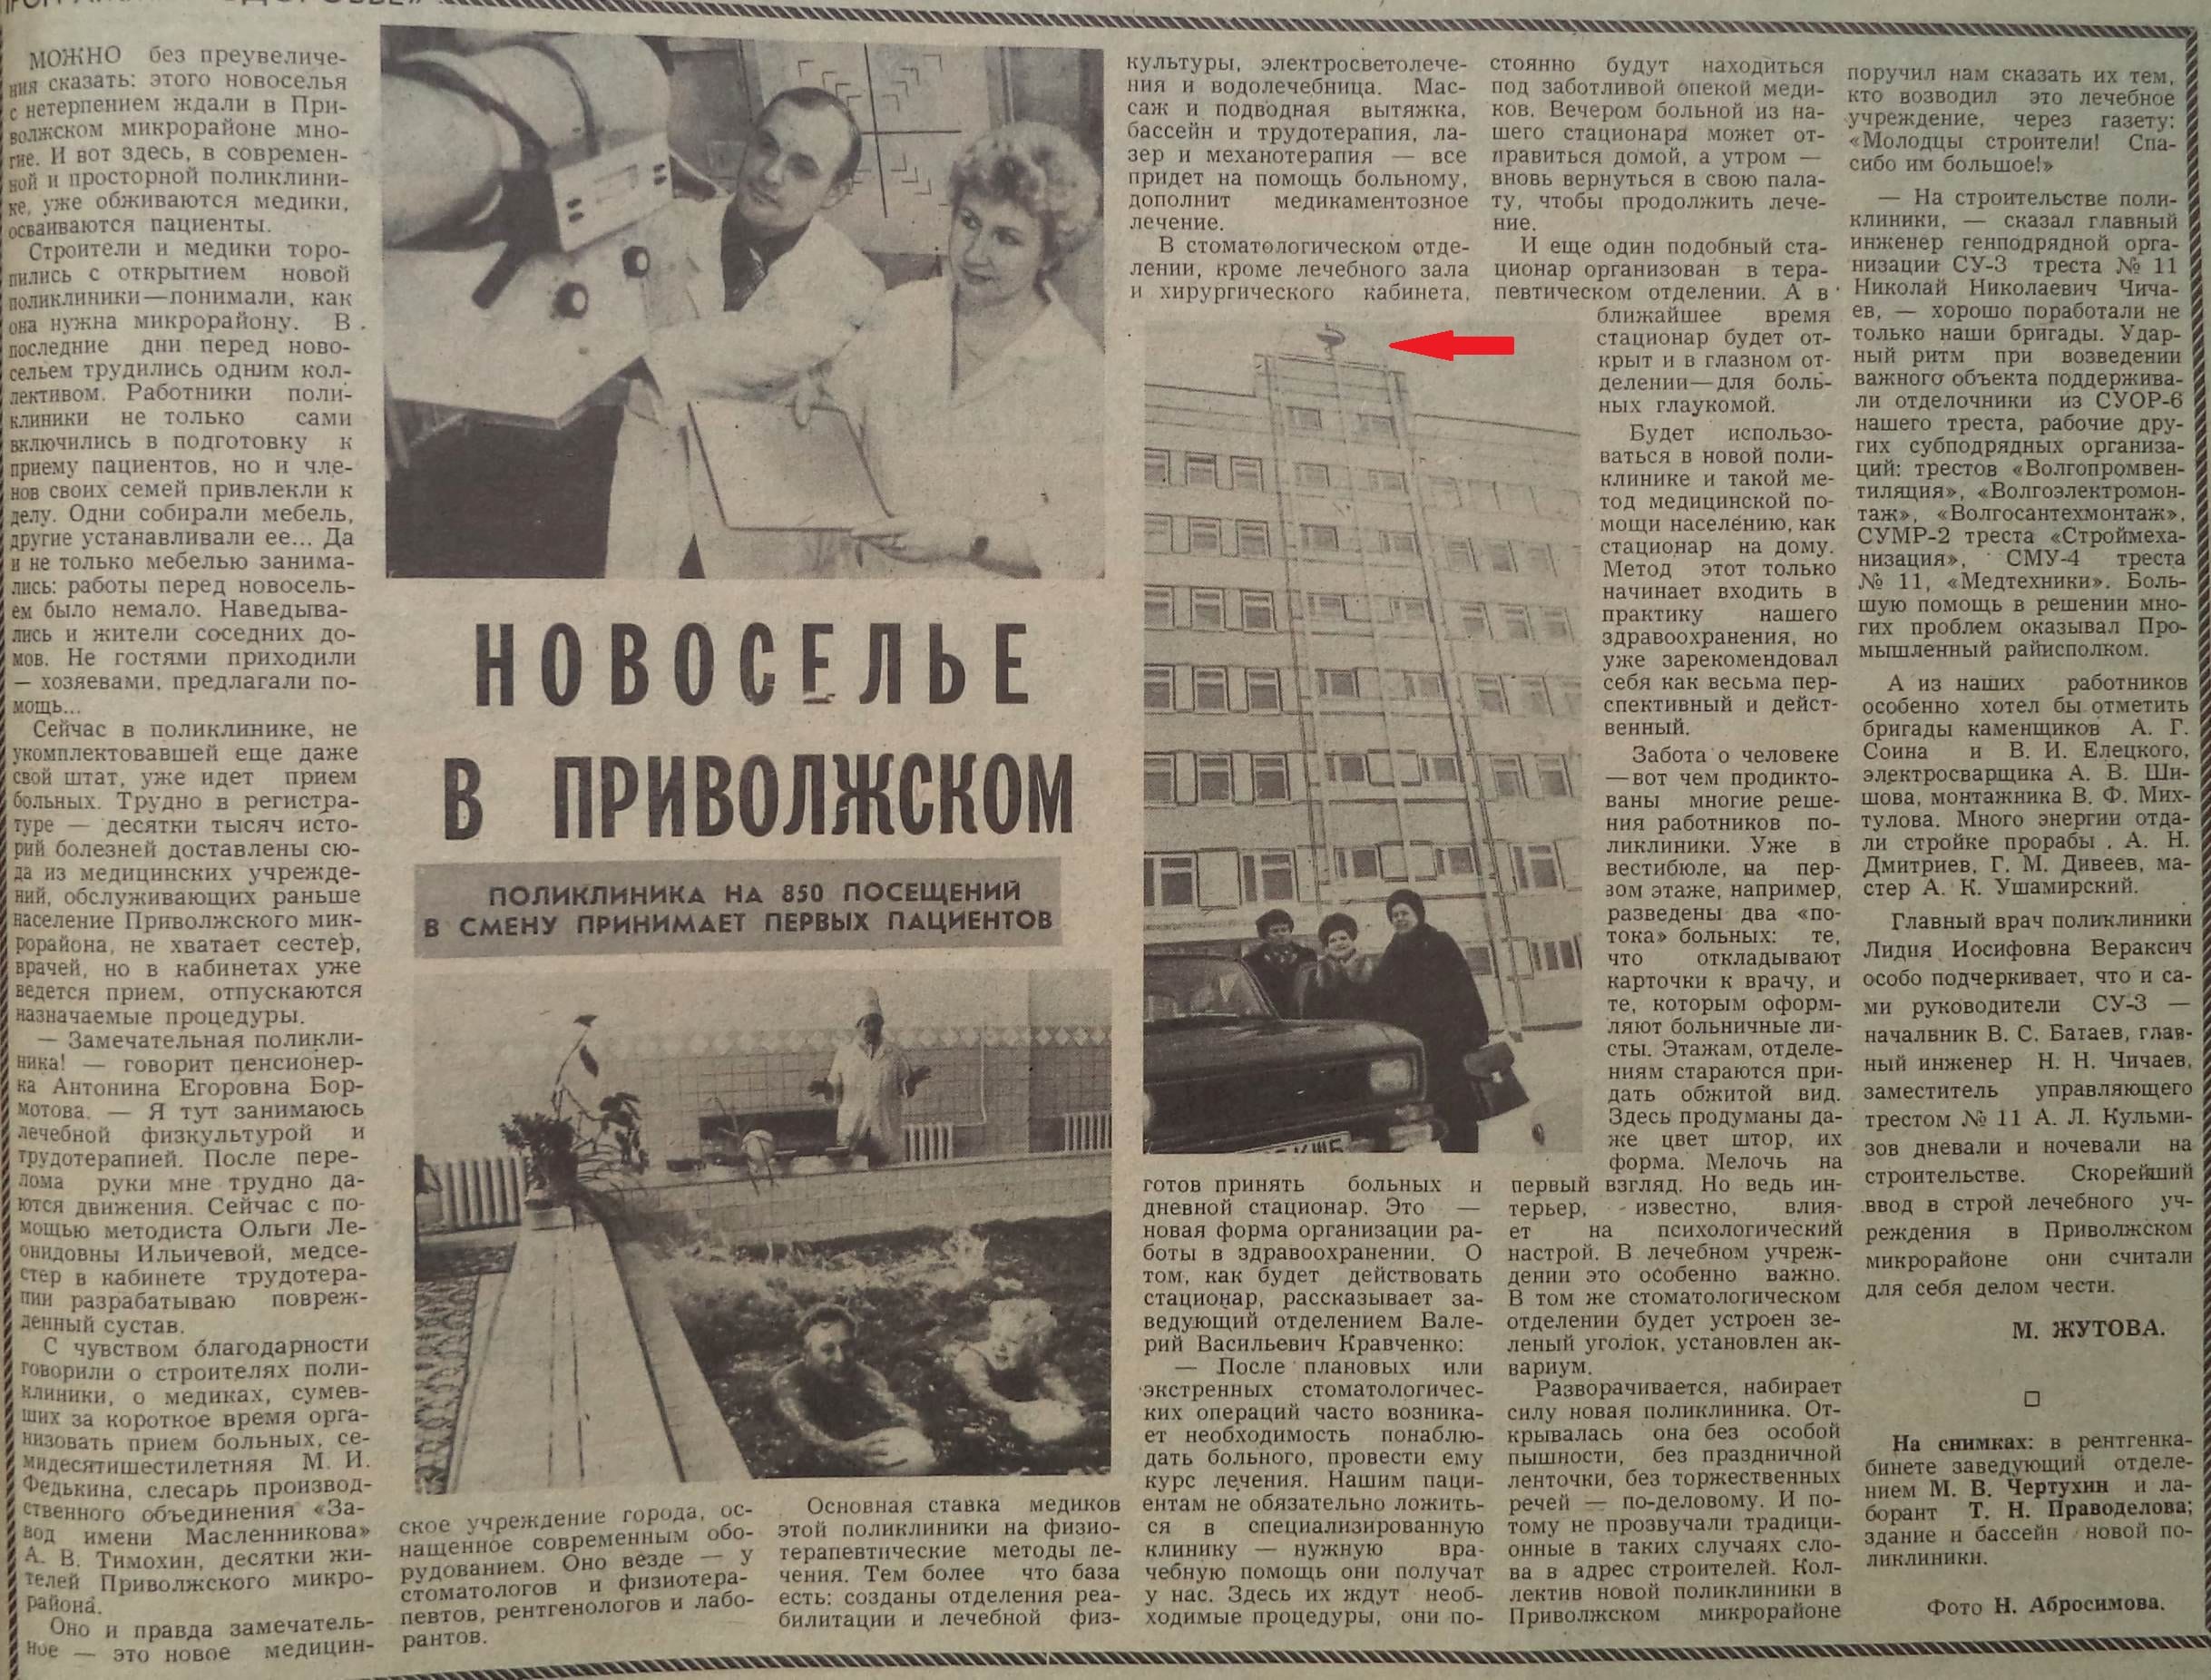 Тополей-ФОТО-11-ВЗя-1987-02-20-новая поликл. в Приволж. мкр